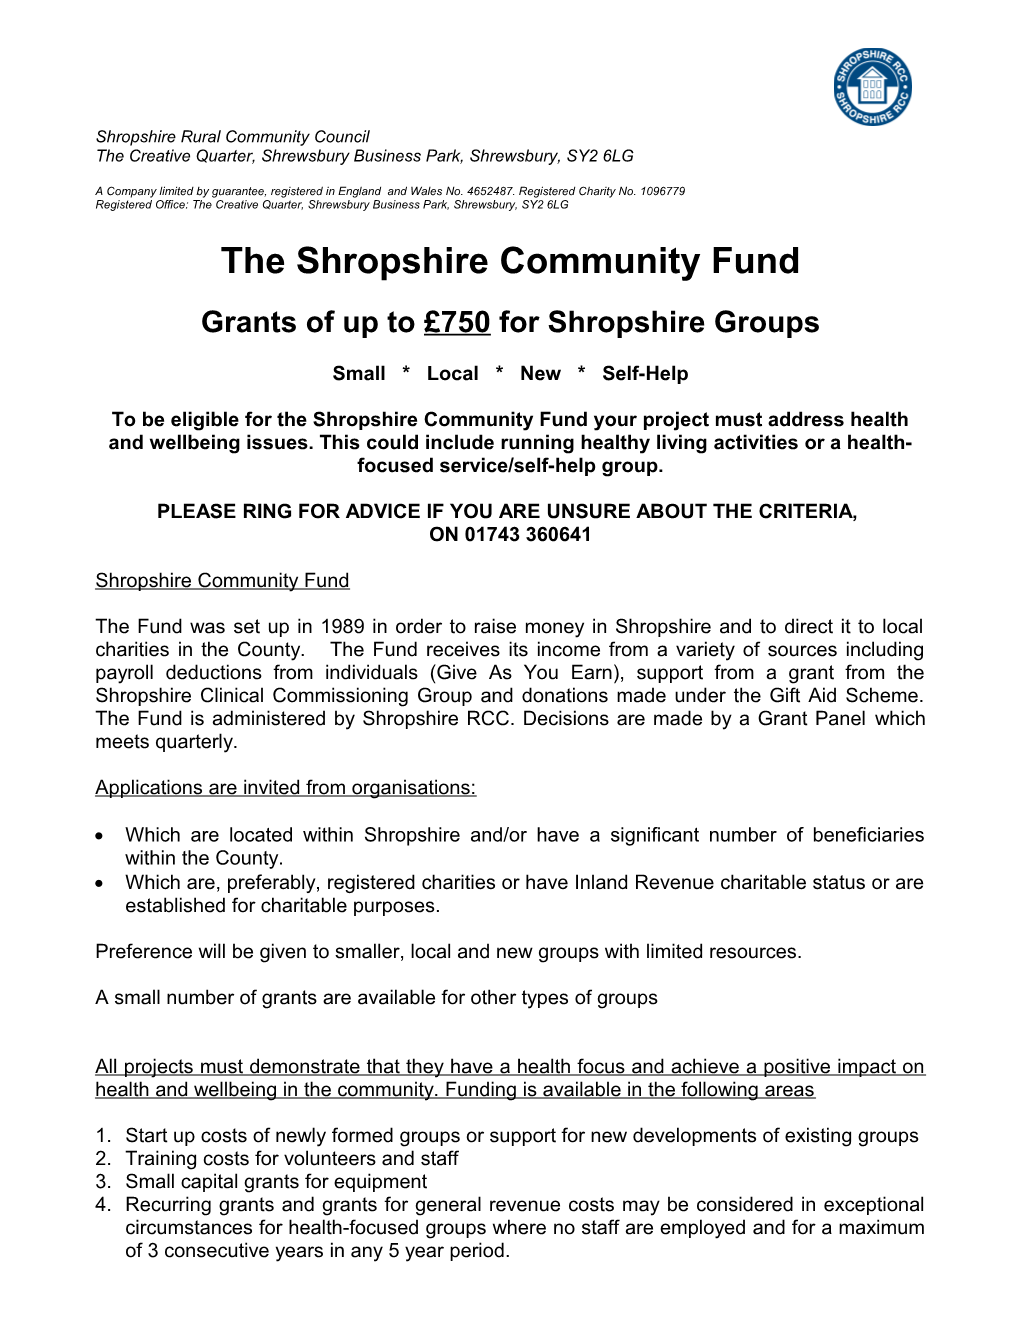 The Shropshire Community Fund